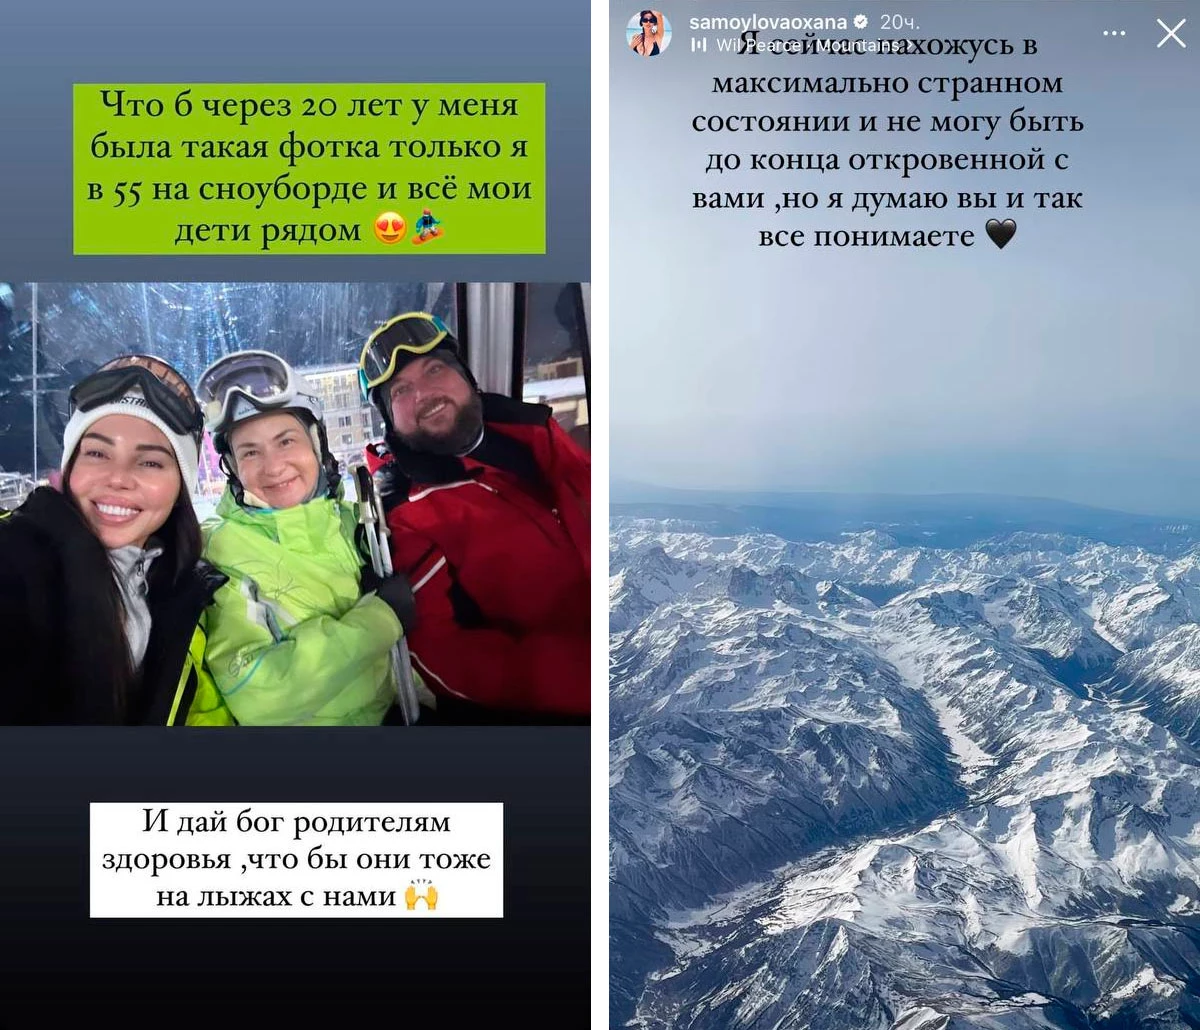 amoylovaoxana / Instagram (владелец соцсети компания Metа признана в России экстремистской организацией и запрещена)